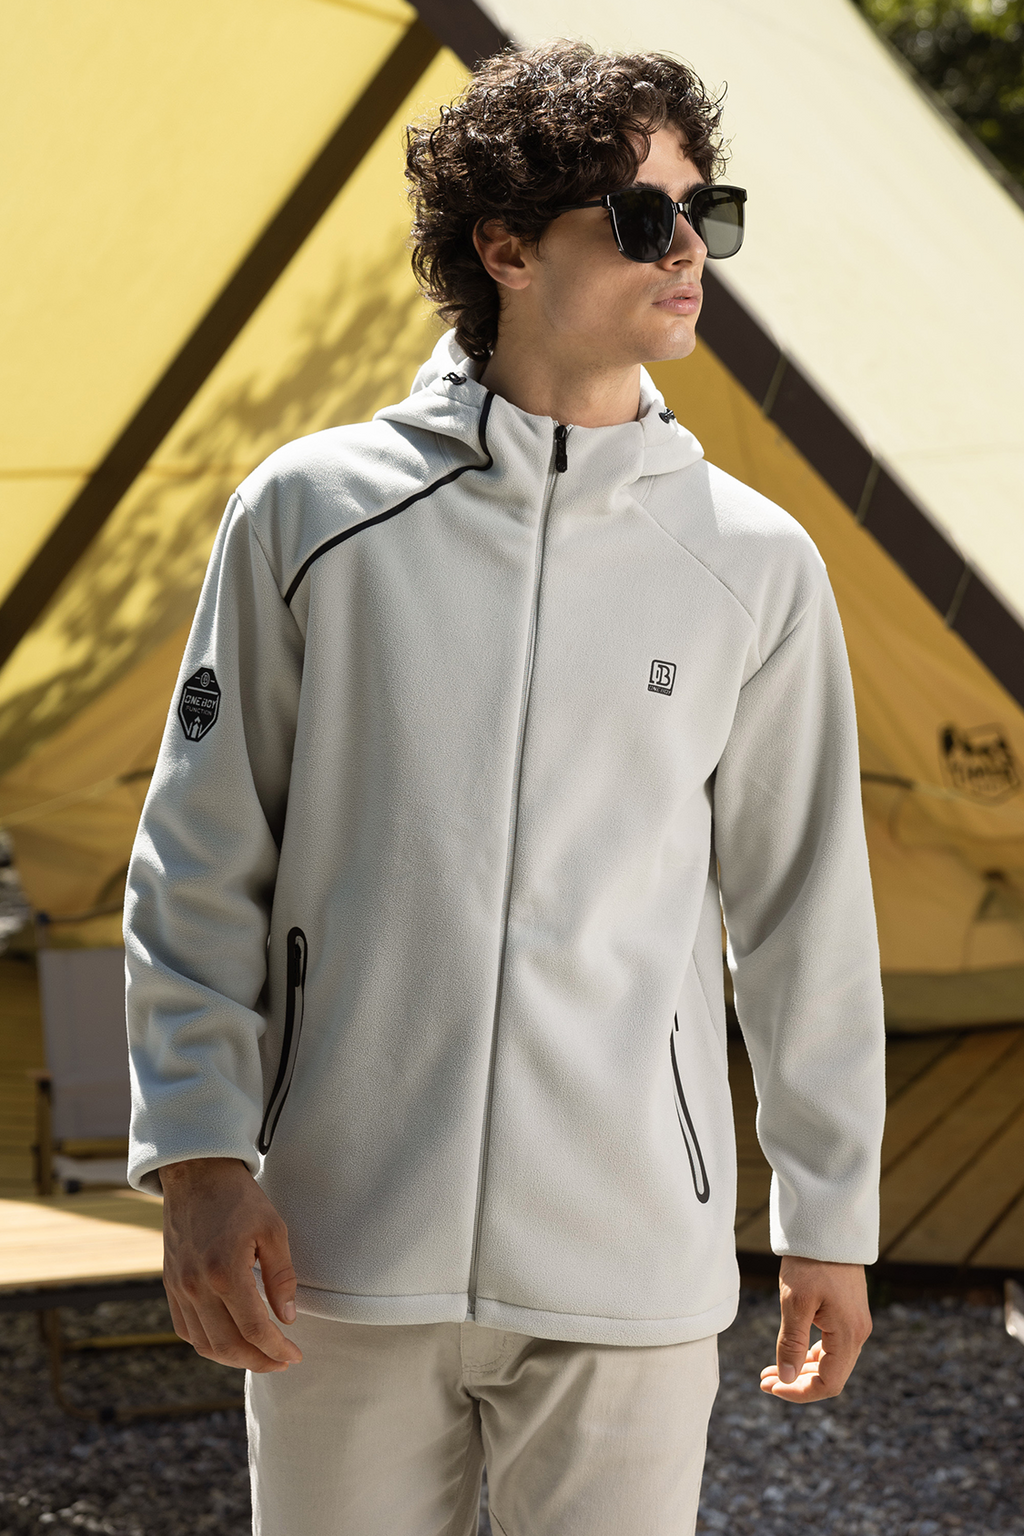 Aquaproof Windresist Light 3-in-1 Interchange Jackets For Men | Oneboy® |  Outdoor Activities Protective Clothing